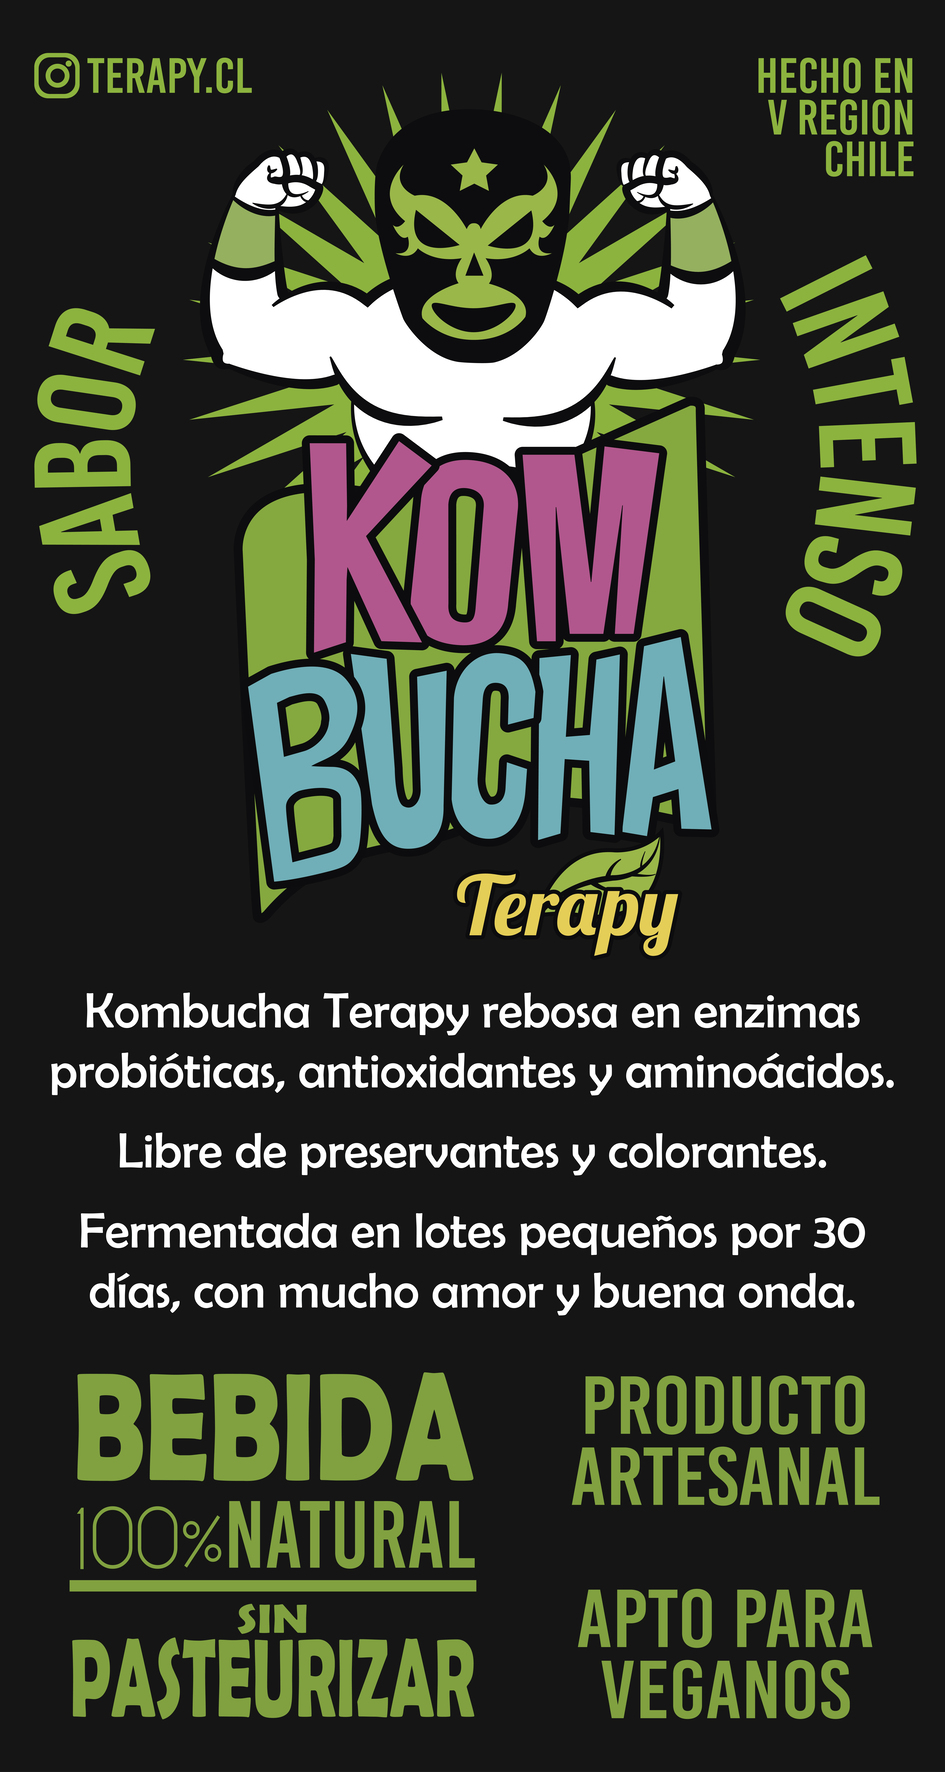 Kombucha Terapy rebosa en enzimas probióticas, antioxidantes y aminoácidos. Libre de preservantes y colorantes. Fermentada en lotes pequeños por 30 días, con mucho amor y buena onda.